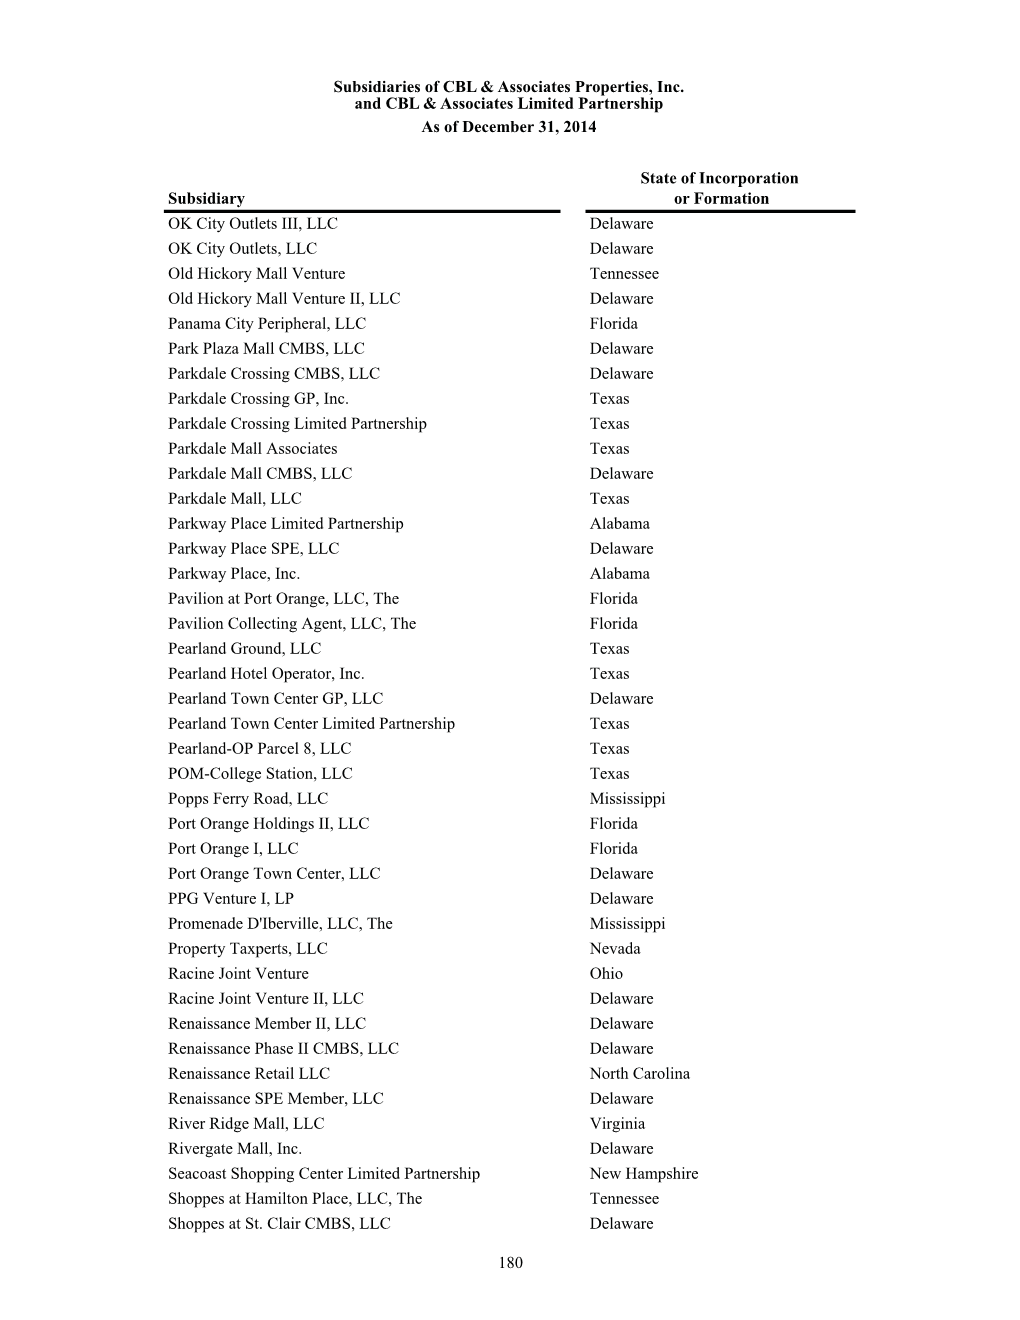 180 Subsidiaries of CBL & Associates Properties, Inc. and CBL